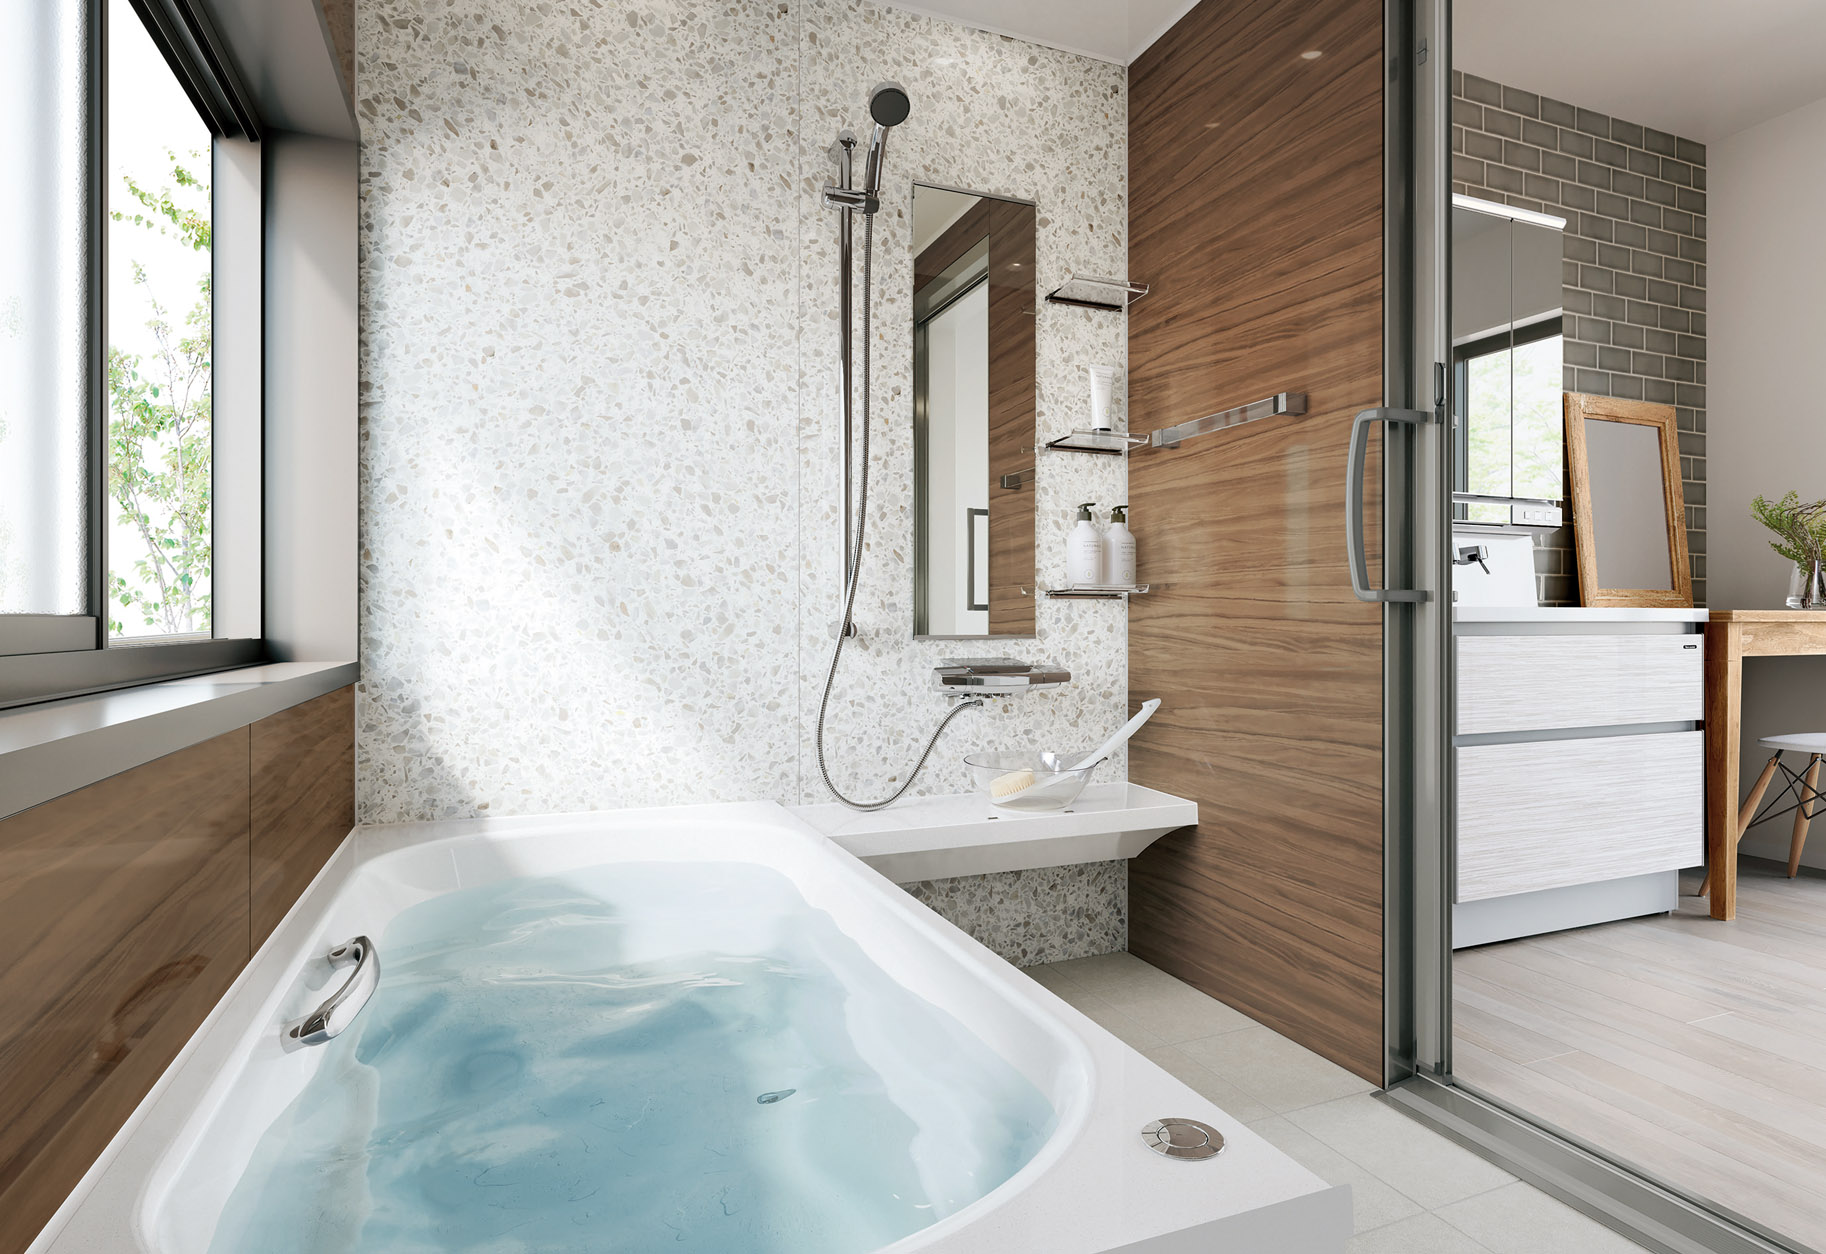 タカラスタンダードの浴室がモデルチェンジ パネルに24種類の新色 施工時間削減 タカラスタンダードの浴室がモデルチェンジ パネルに24種類の新色 施工時間削減